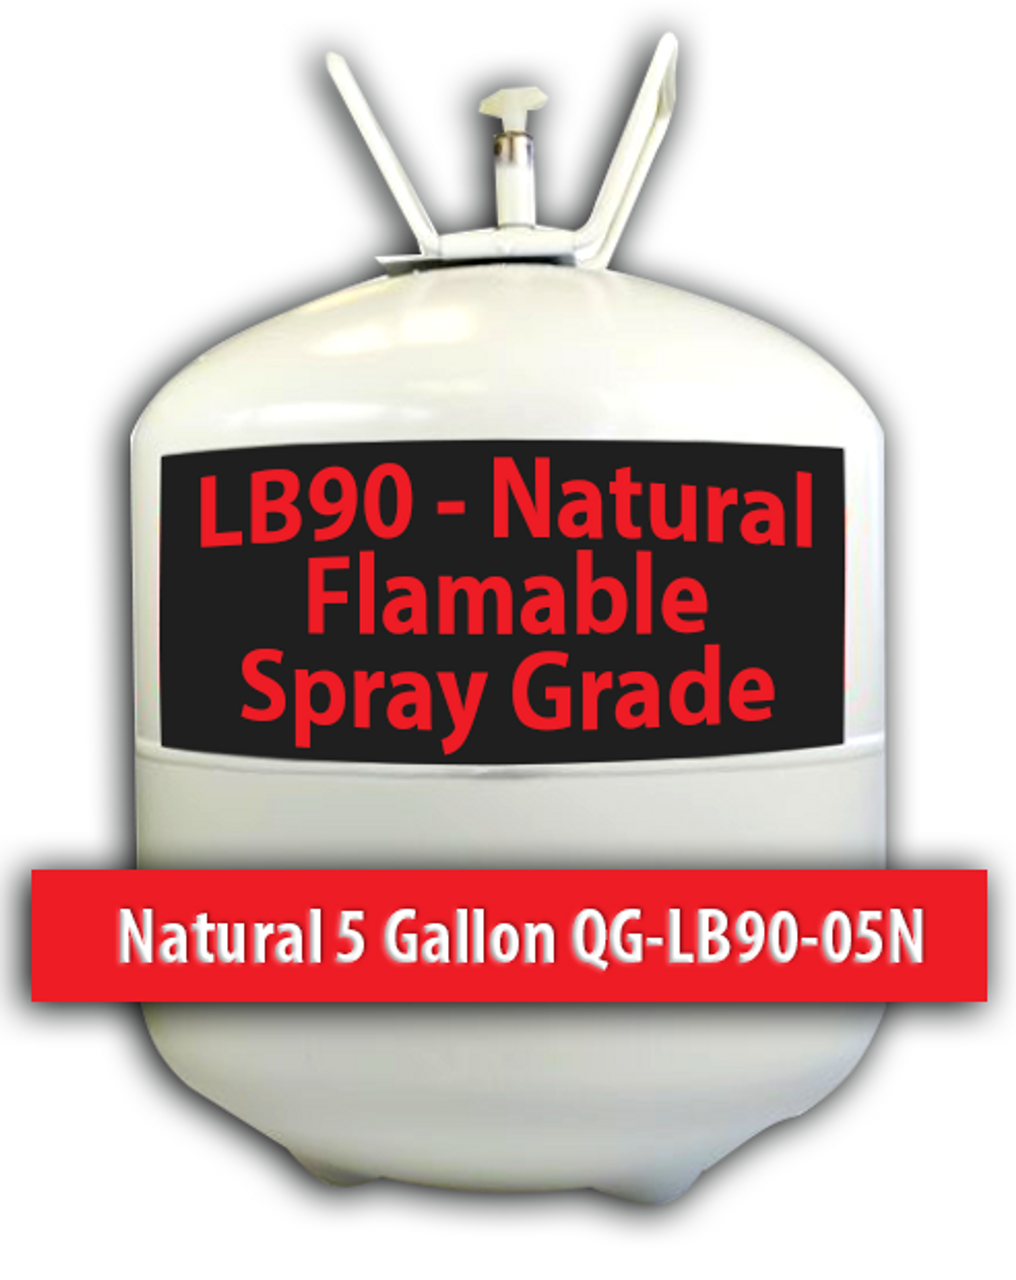 Flamable Spray Grade Contact Adhesive Natural 5 Gallons QG-LB90-05N Quin Global TensorGrip